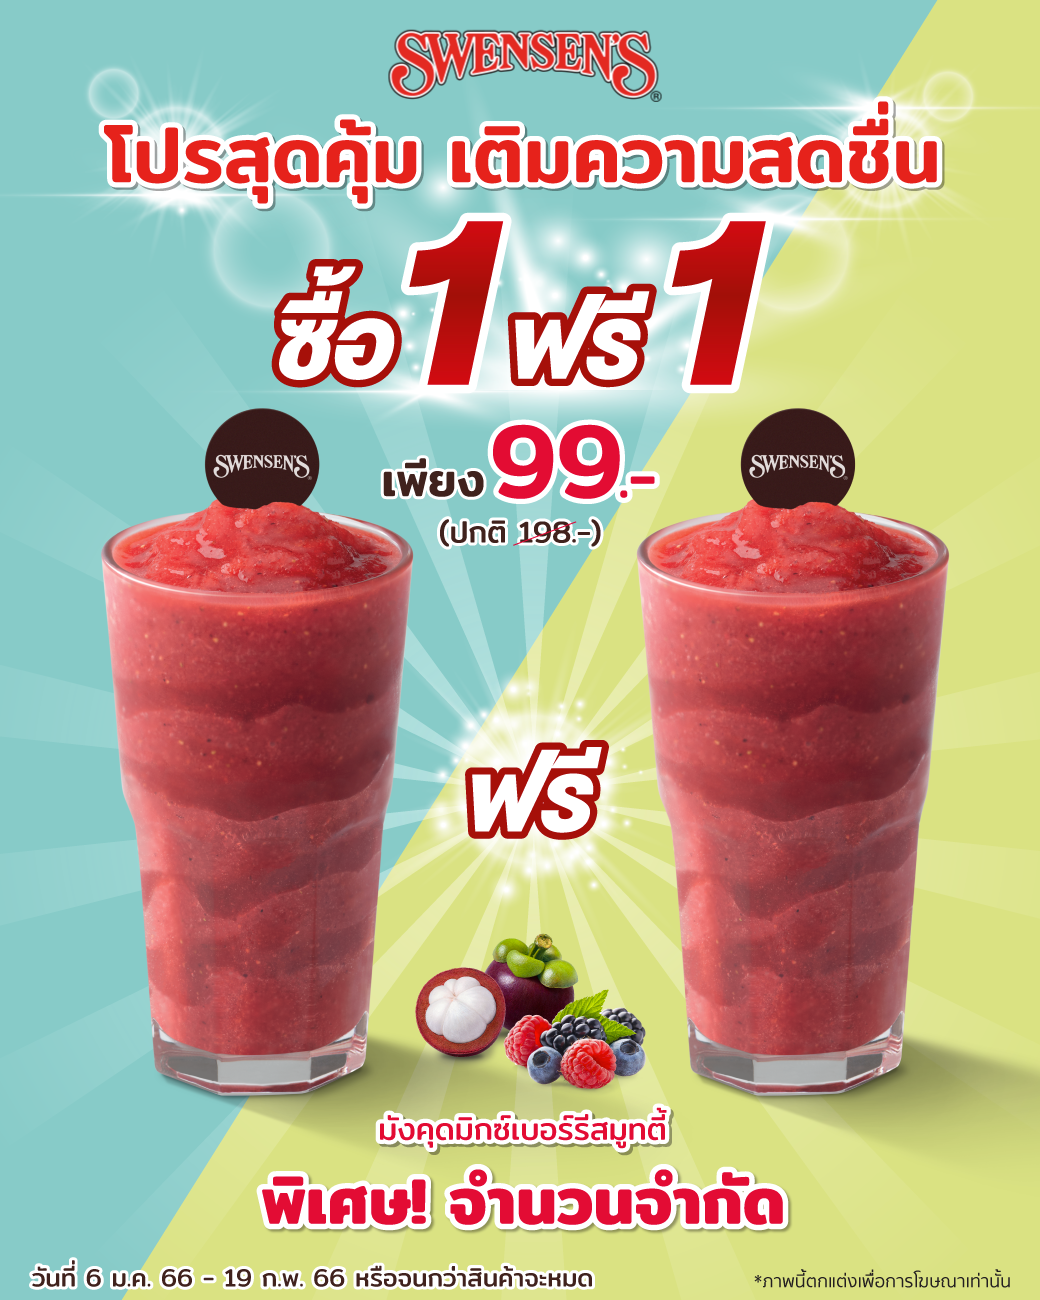 10 deals in thailand - swensen's